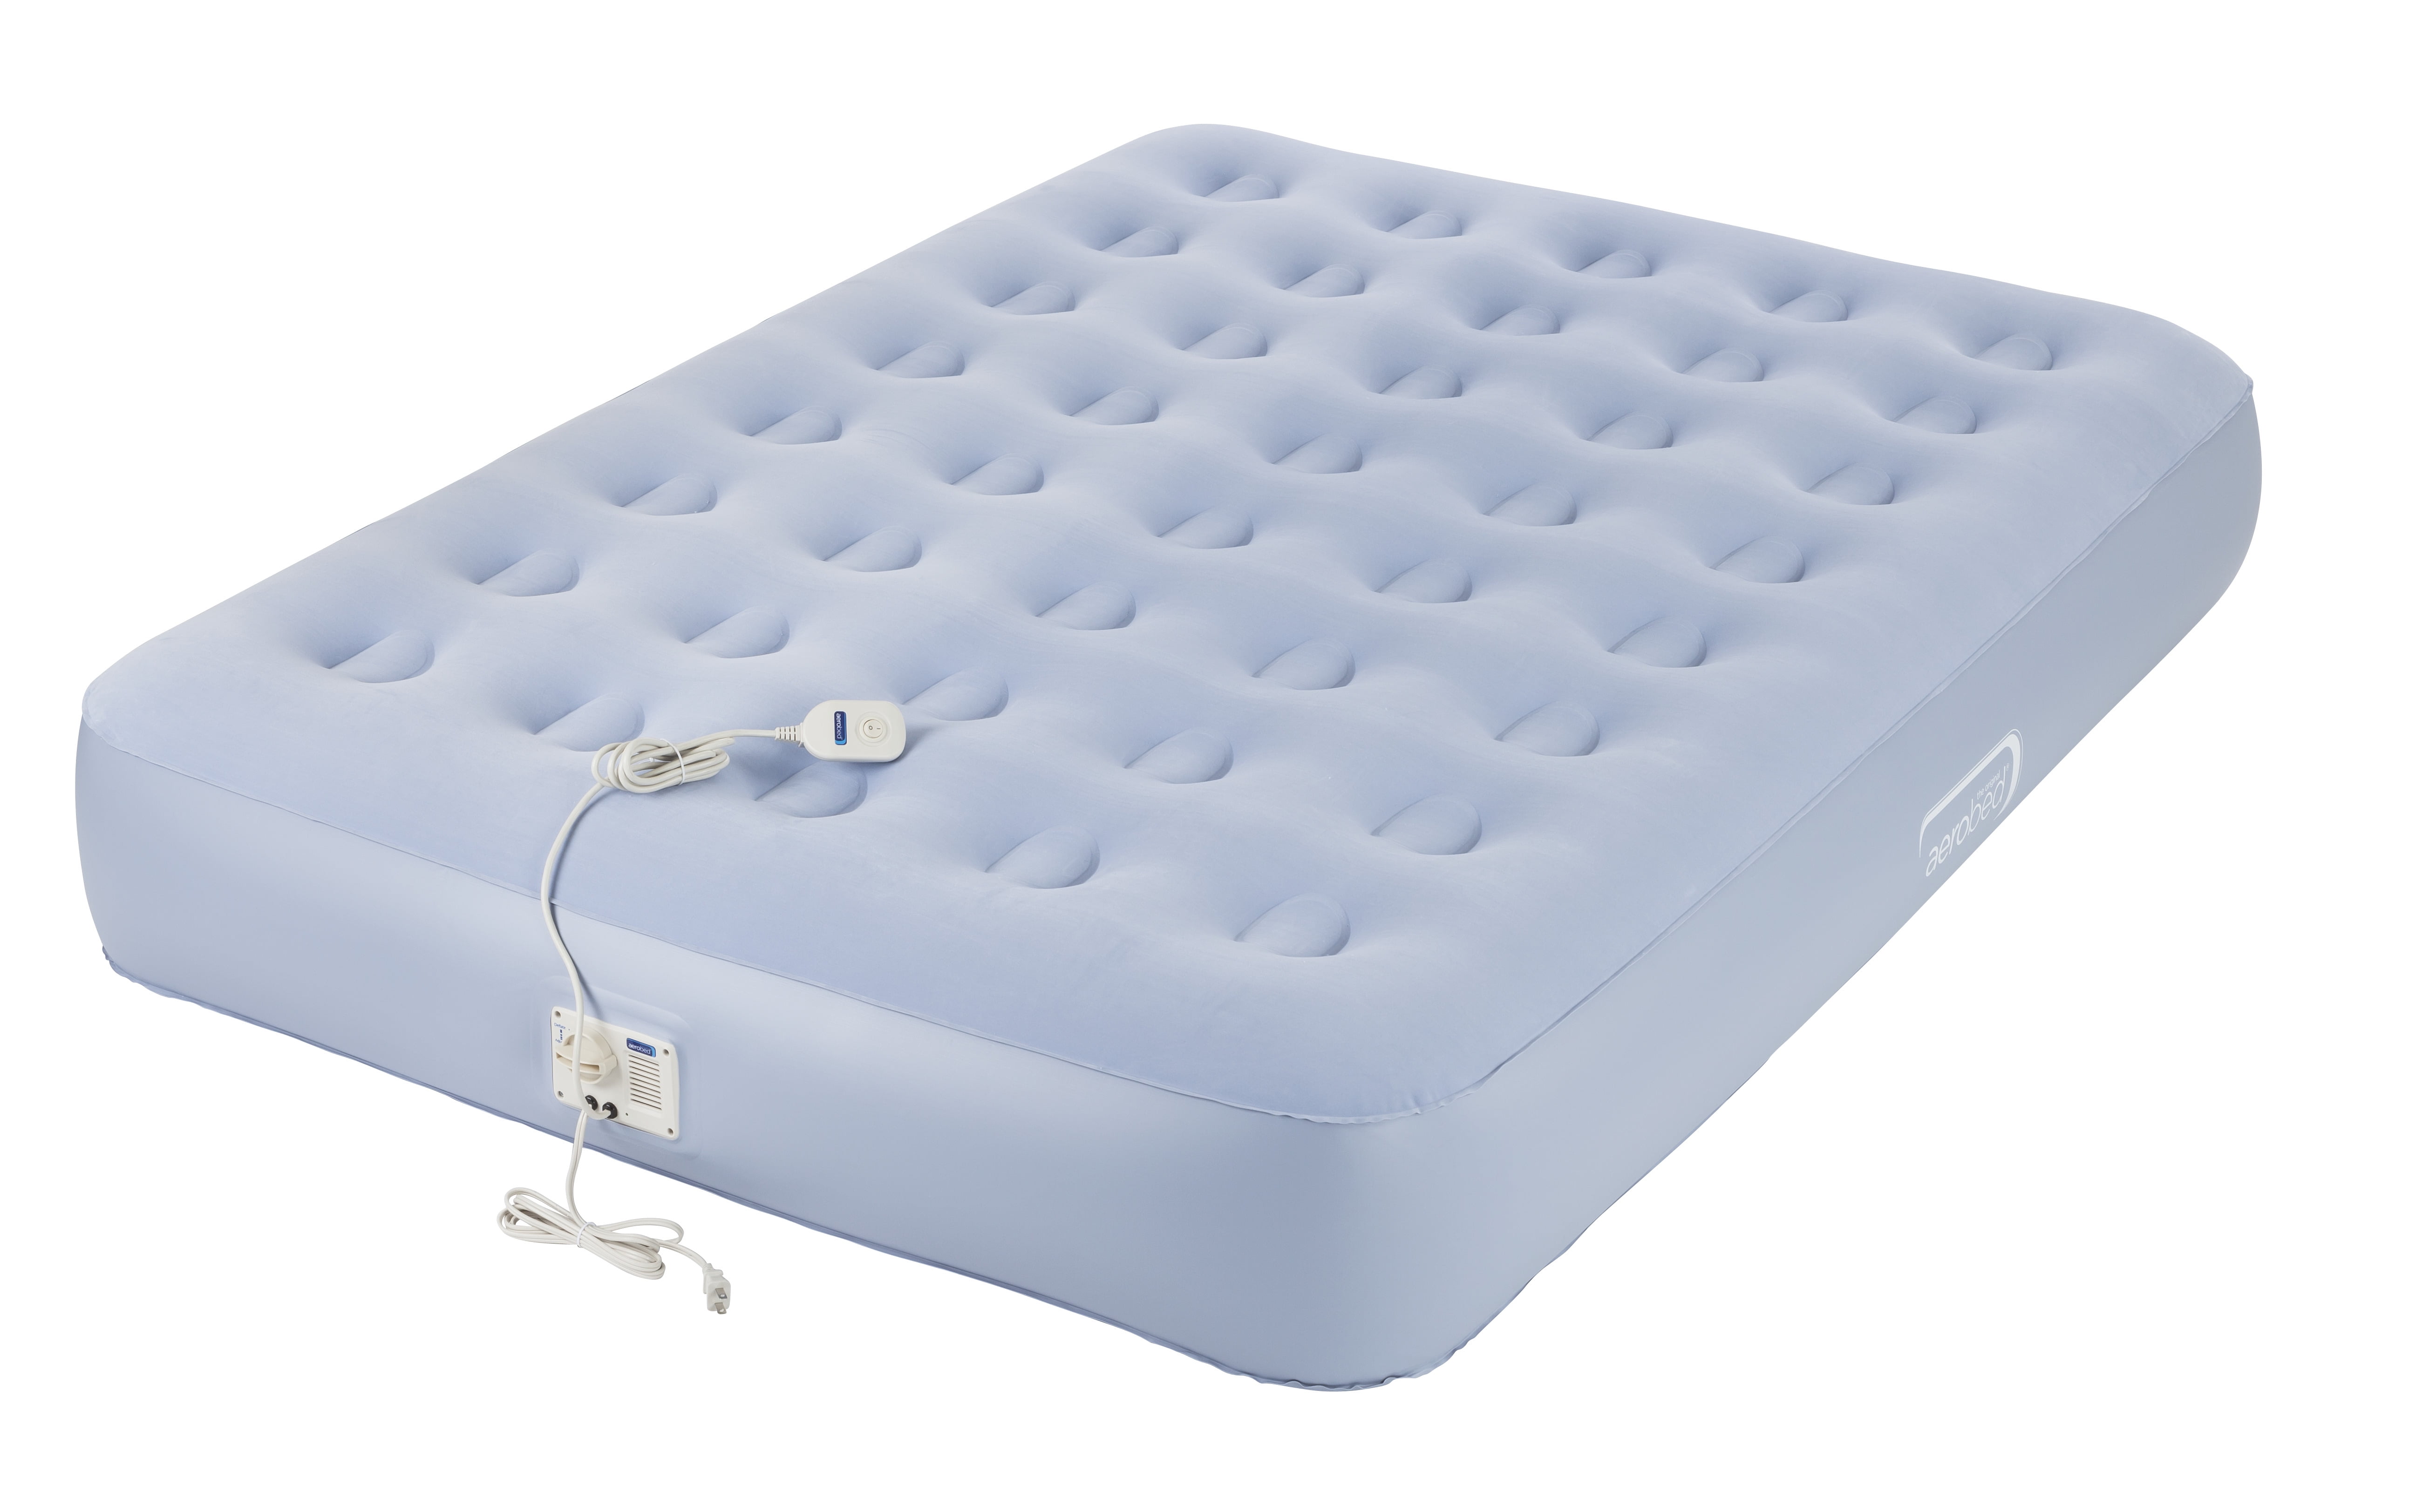 enerplex pillow top twin air mattress reviews